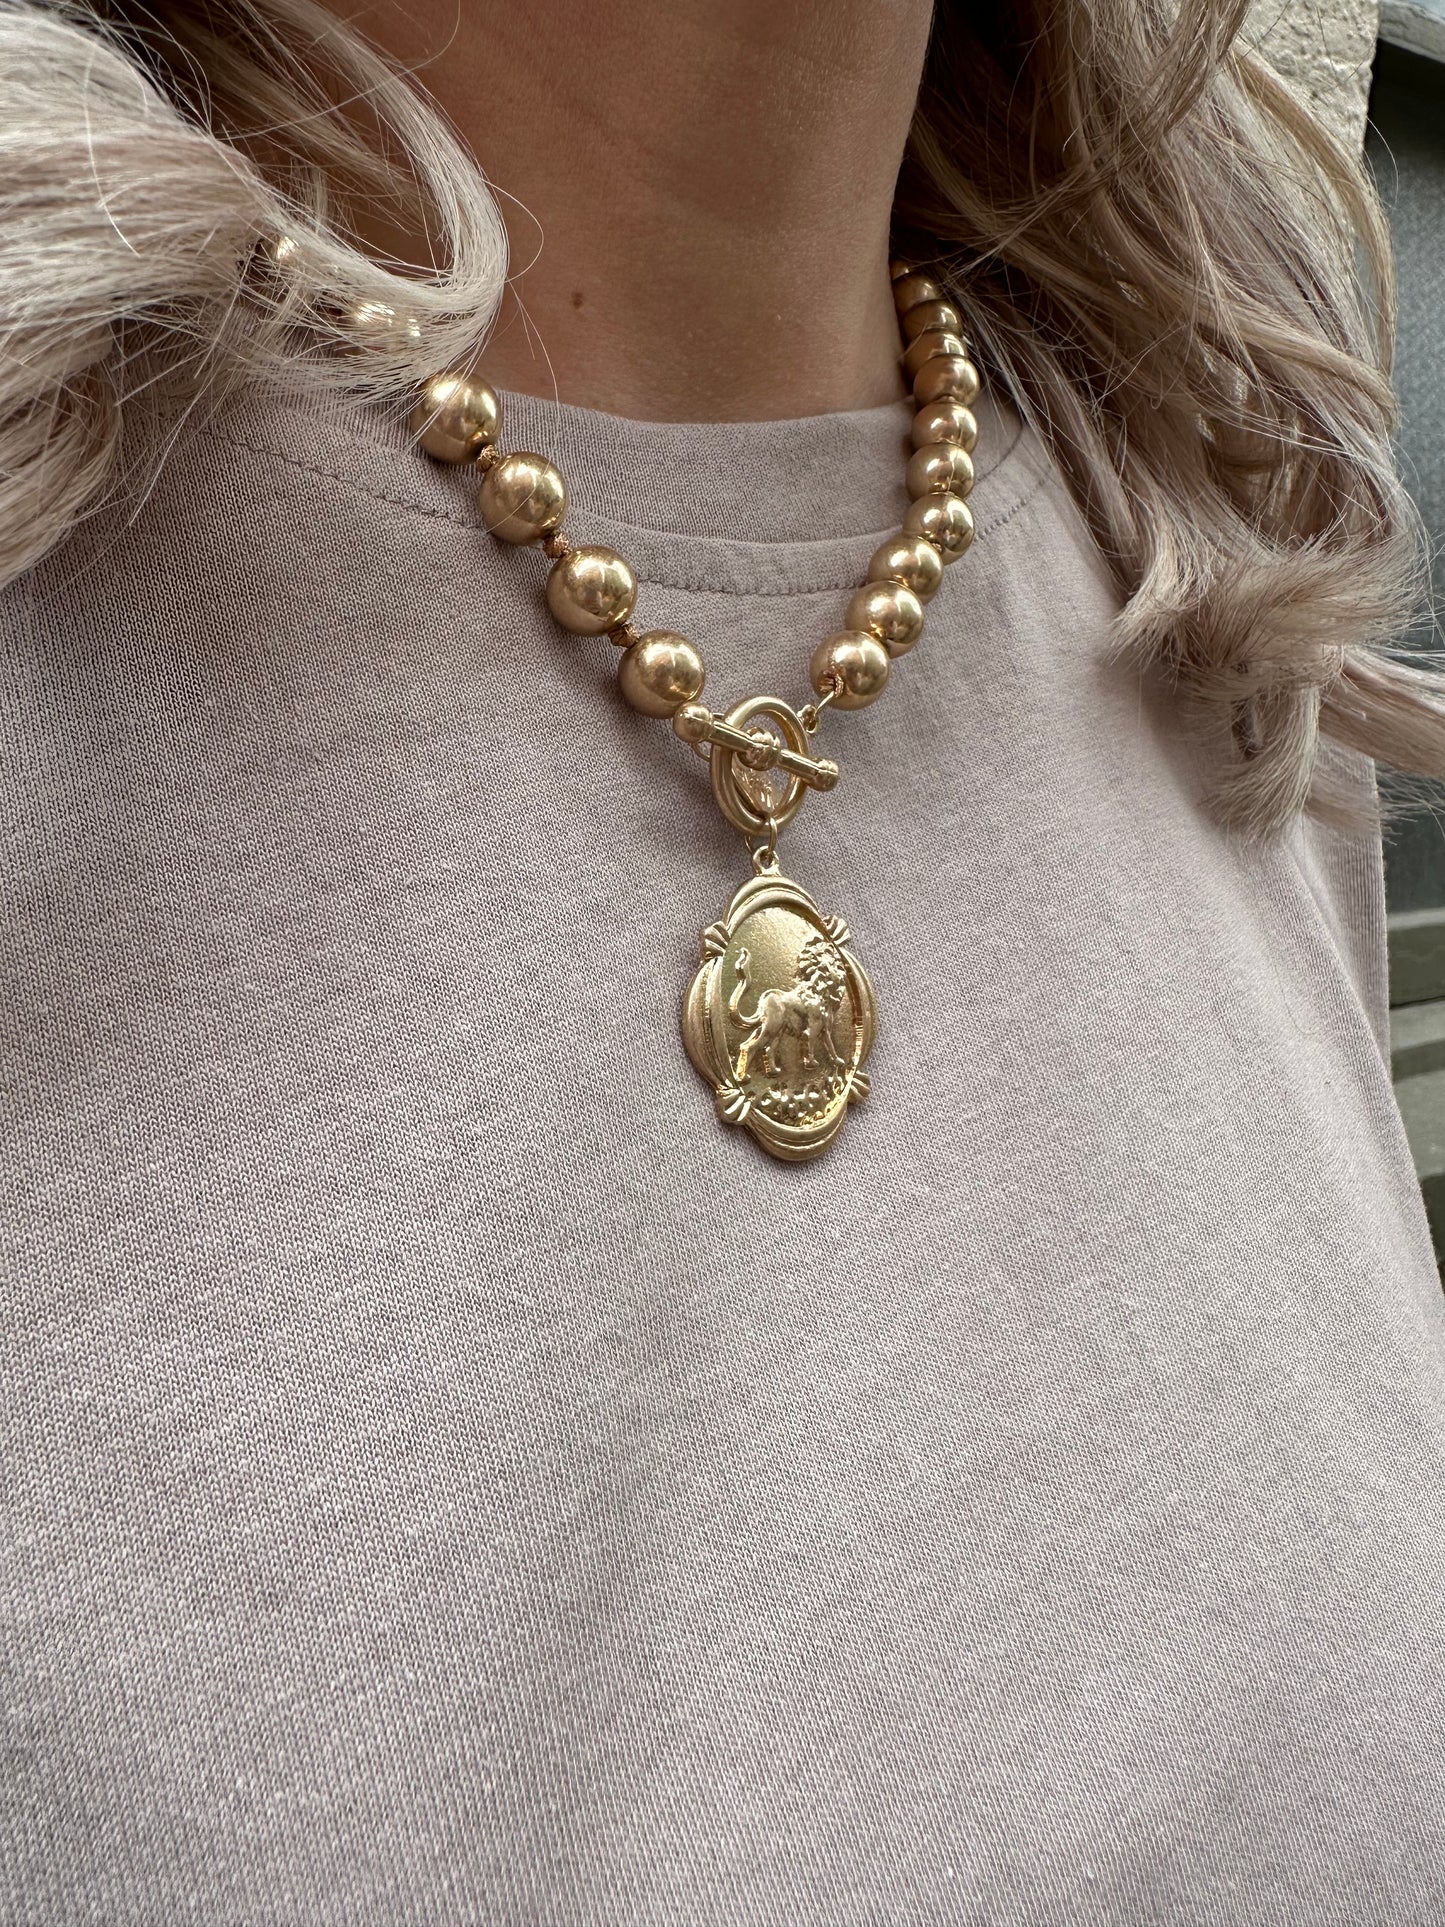 Leo Lion Gold Necklace